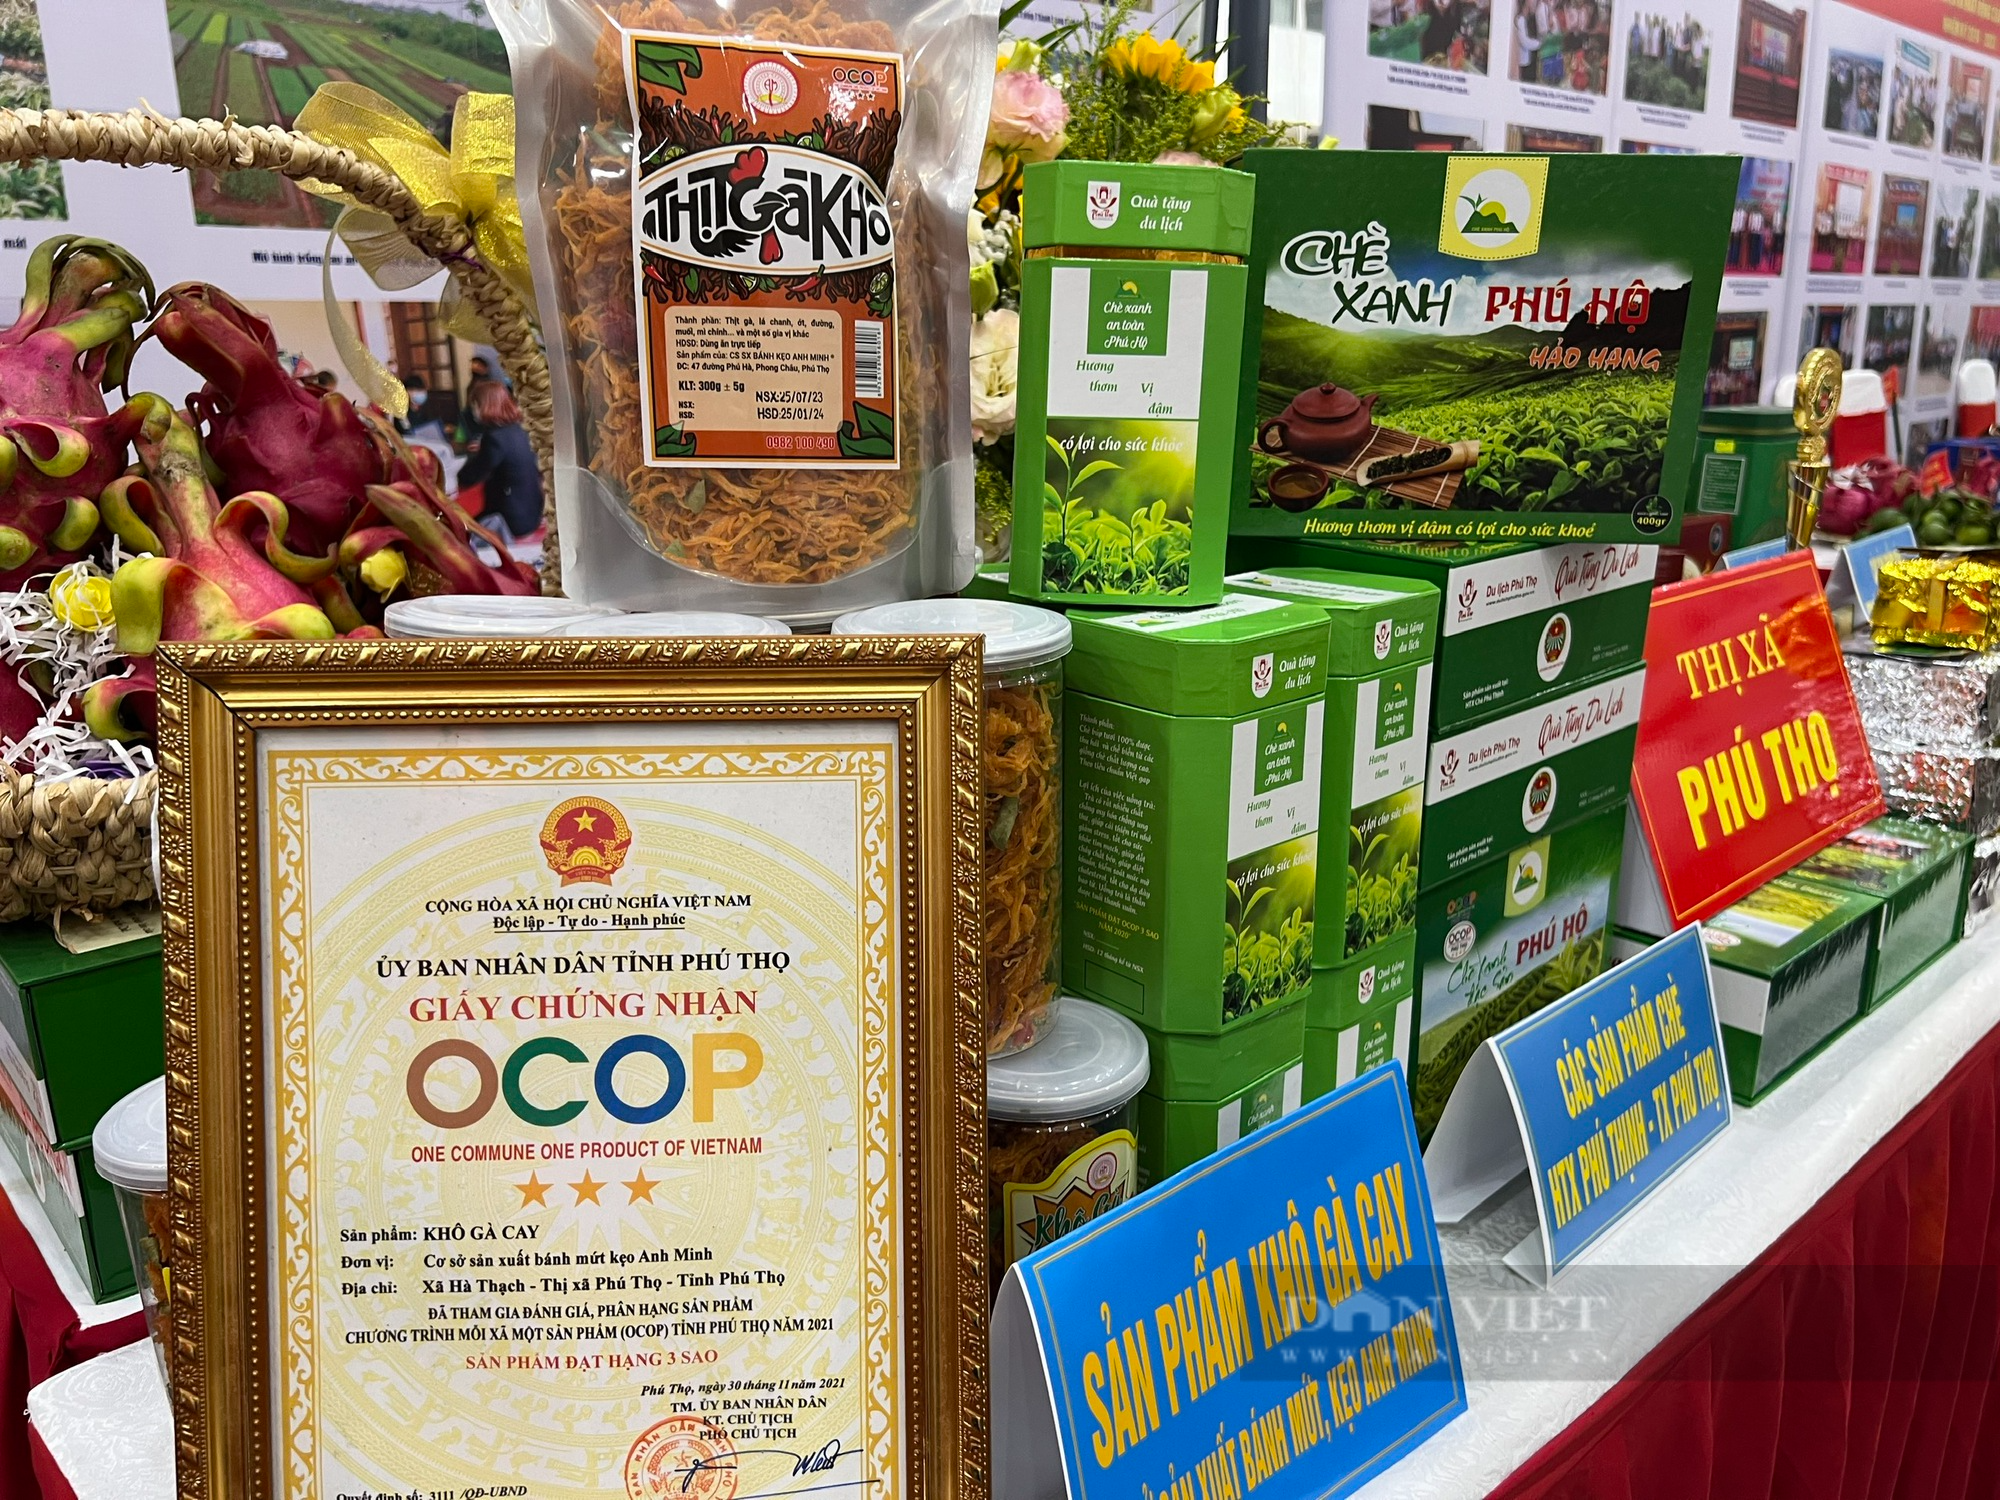 Đại biểu “say” đặc sản OCOP chè xanh, gà cựa, rau sắn, mỳ gạo tại Đại hội Nông dân tỉnh Phú Thọ  - Ảnh 8.